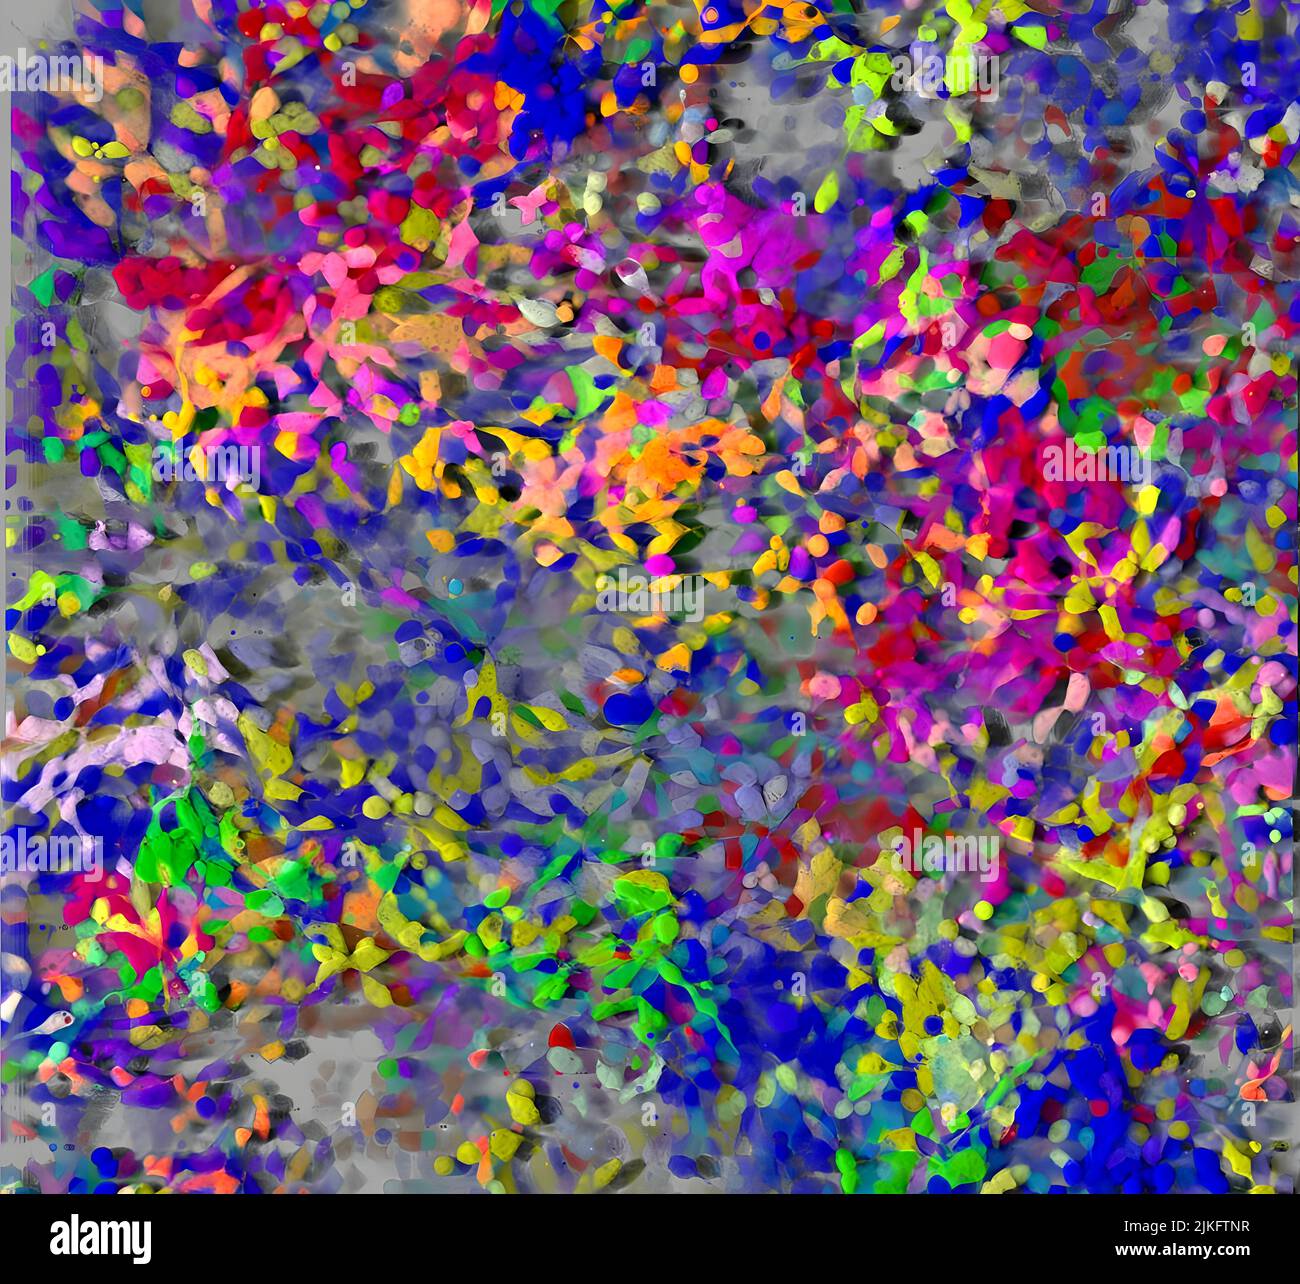 L'immagine mostra un rendering 3D (software Imaris) di una coltura confluente viva di cellule NIH-3T3 ottenute mediante microscopia confocale. Le cellule sono state co-trasdotte con proteine fluorescenti 5 e con proteine fluorescenti del gene lentivirale di ontologia (LEGO) vettori venus Cerulean (blu), EGFP (verde), Venus (giallo), tdTomato (magenta) o mCherry (rosso) per fornire colori combinatoriali per il tracciamento della progenie. Gruppi di cellule vicine dello stesso colore sono discesi dalle stesse cellule staminali. Foto Stock